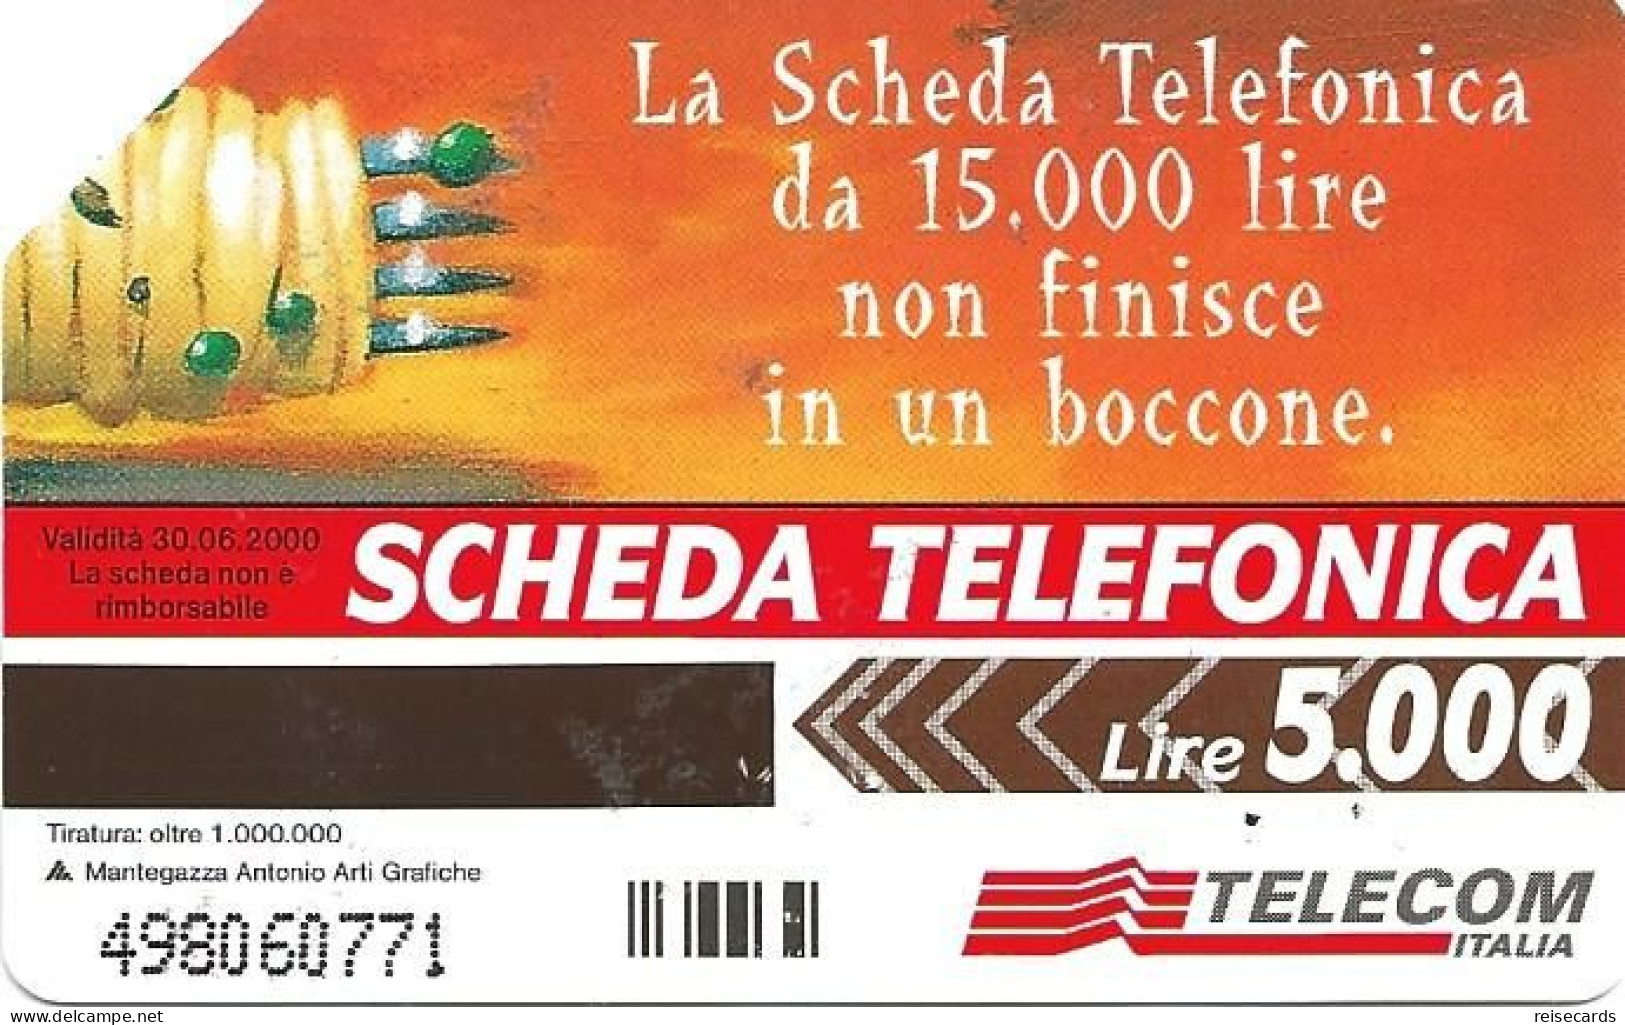 Italy: Telecom Italia - La Scheda Telefonica, Parlate Con Più Gusto - Publiques Publicitaires